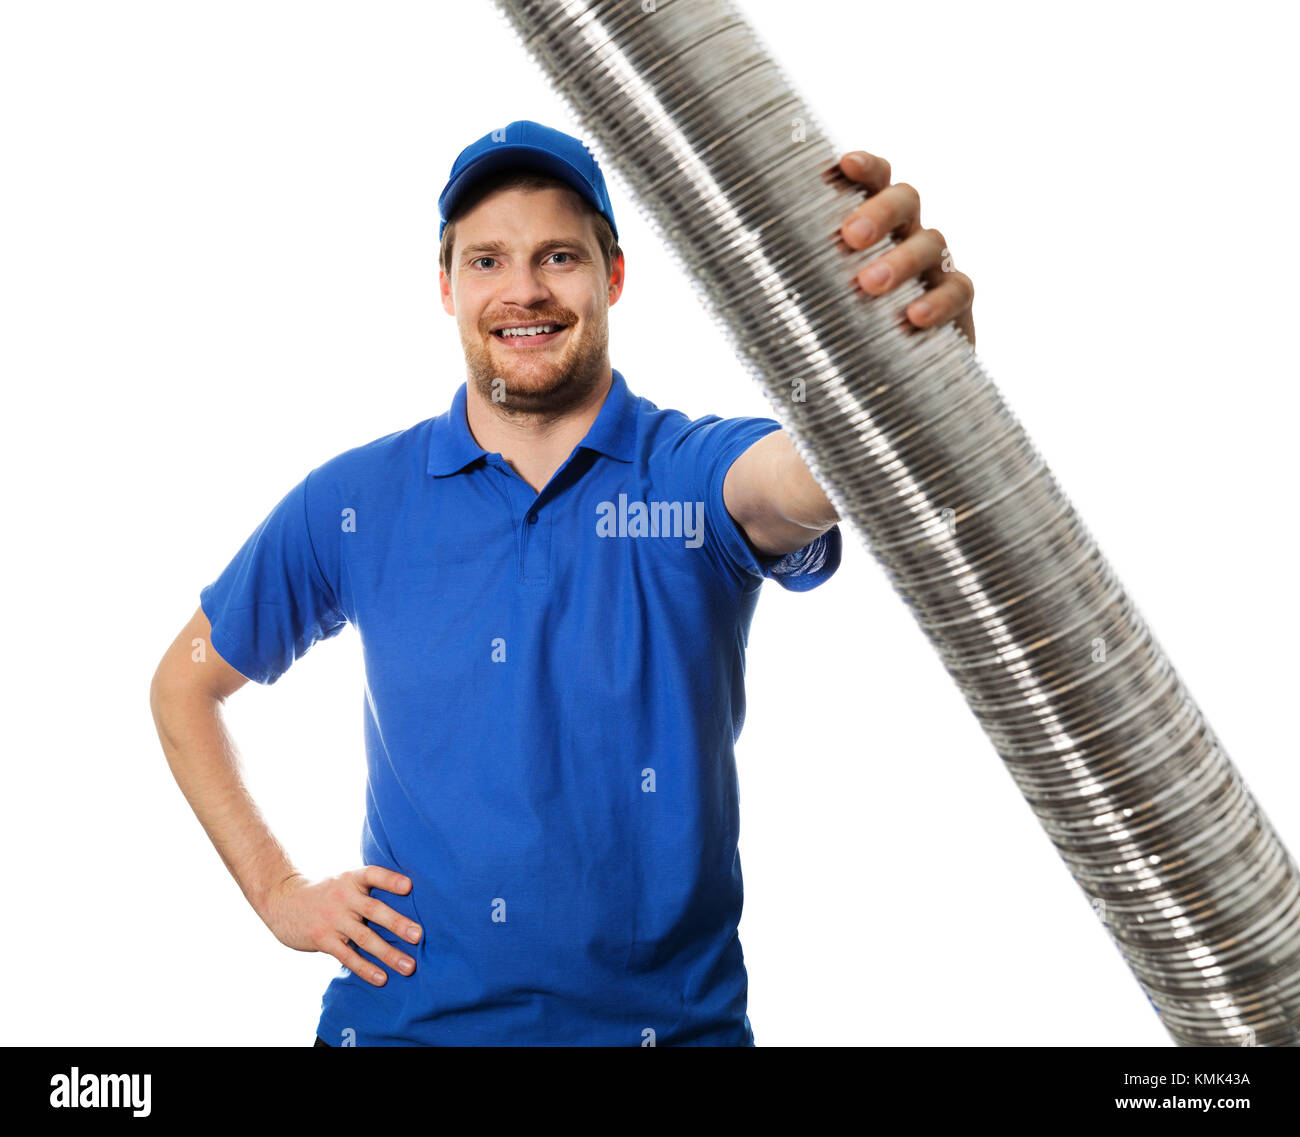 Mann in der blauen Uniform mit flexiblen Rohrleitungen aus Aluminium Rohr in der Hand Stockfoto